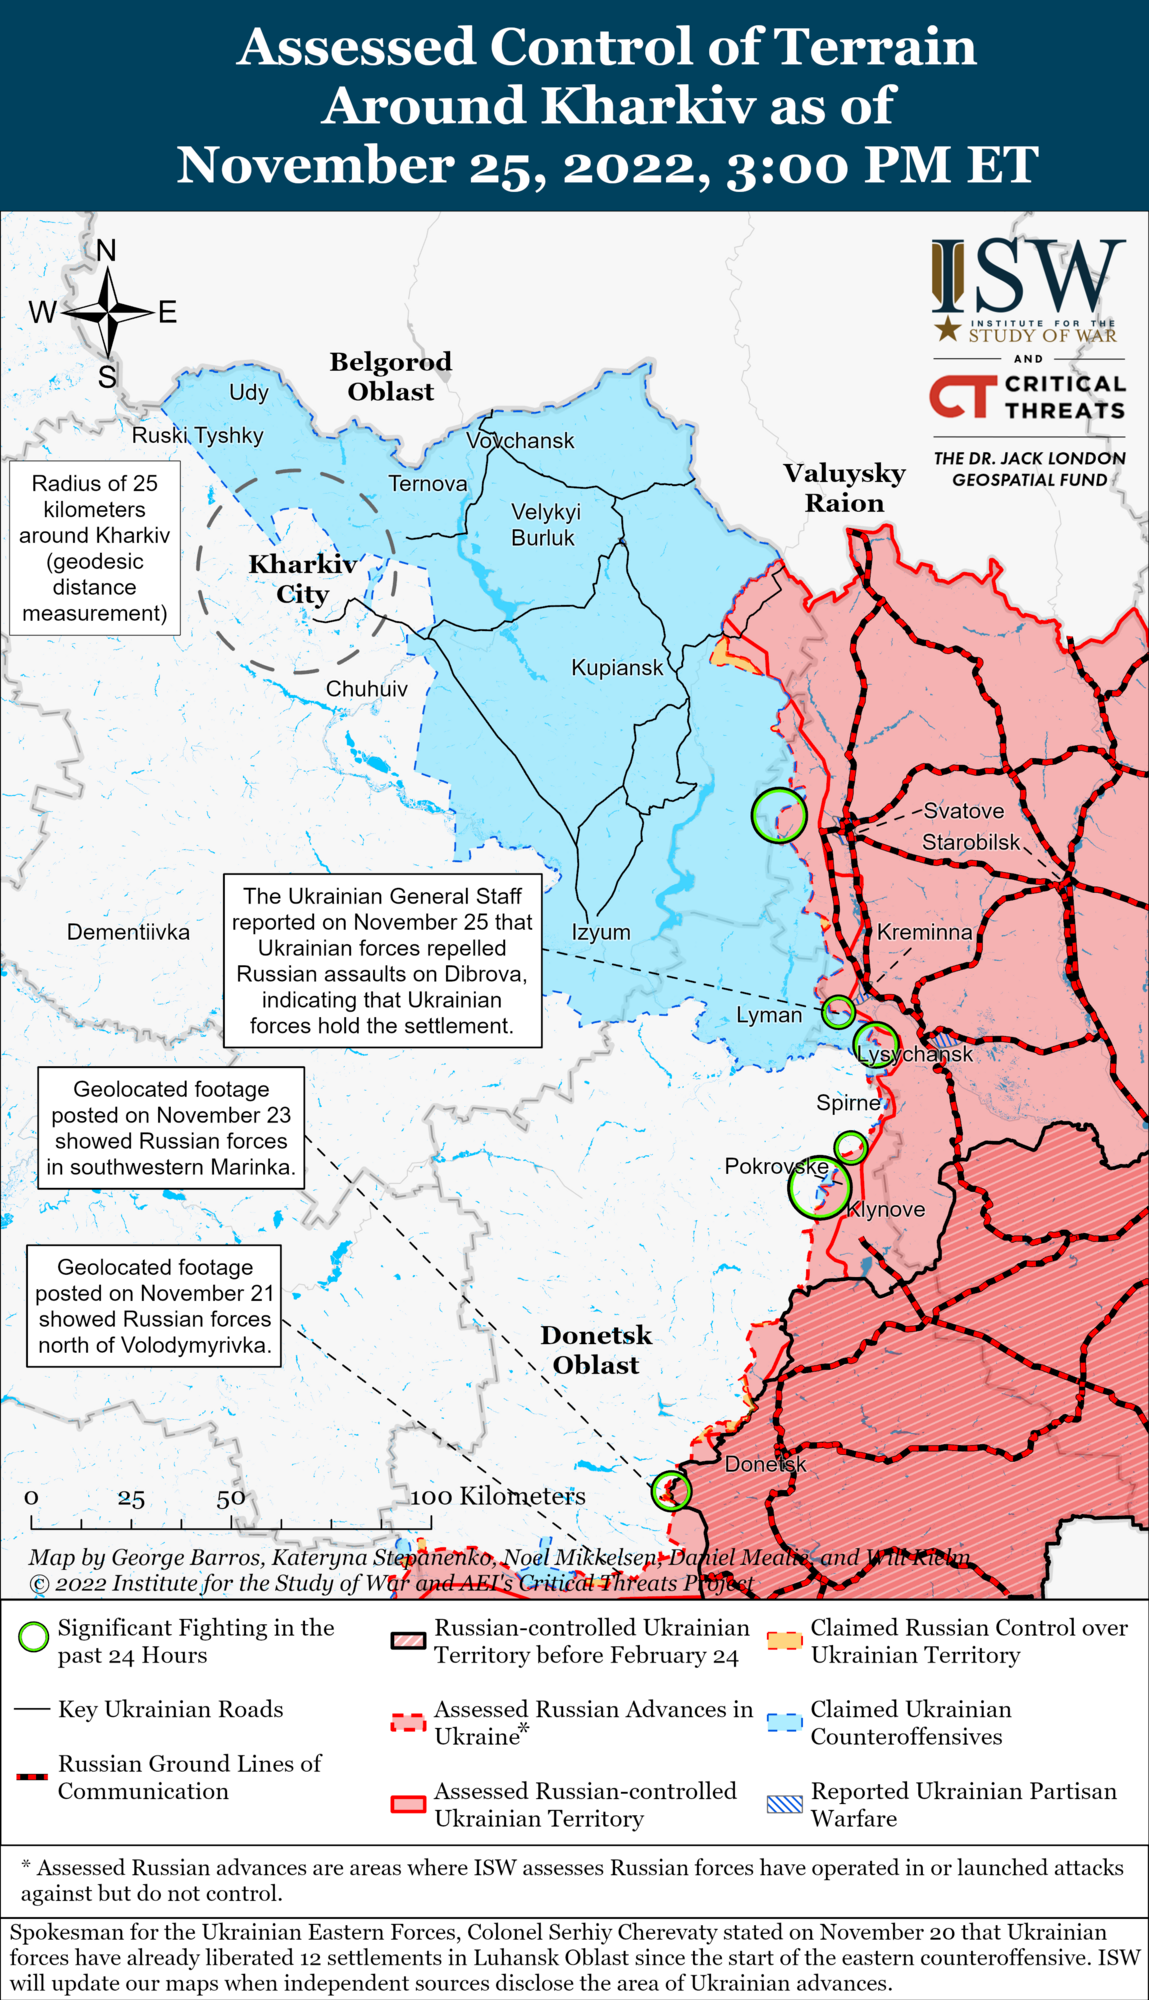 Війська РФ здійснюють контратаки поблизу Сватового, а ЗСУ атакують ворога біля Кремінної: аналіз бойових дій від ISW